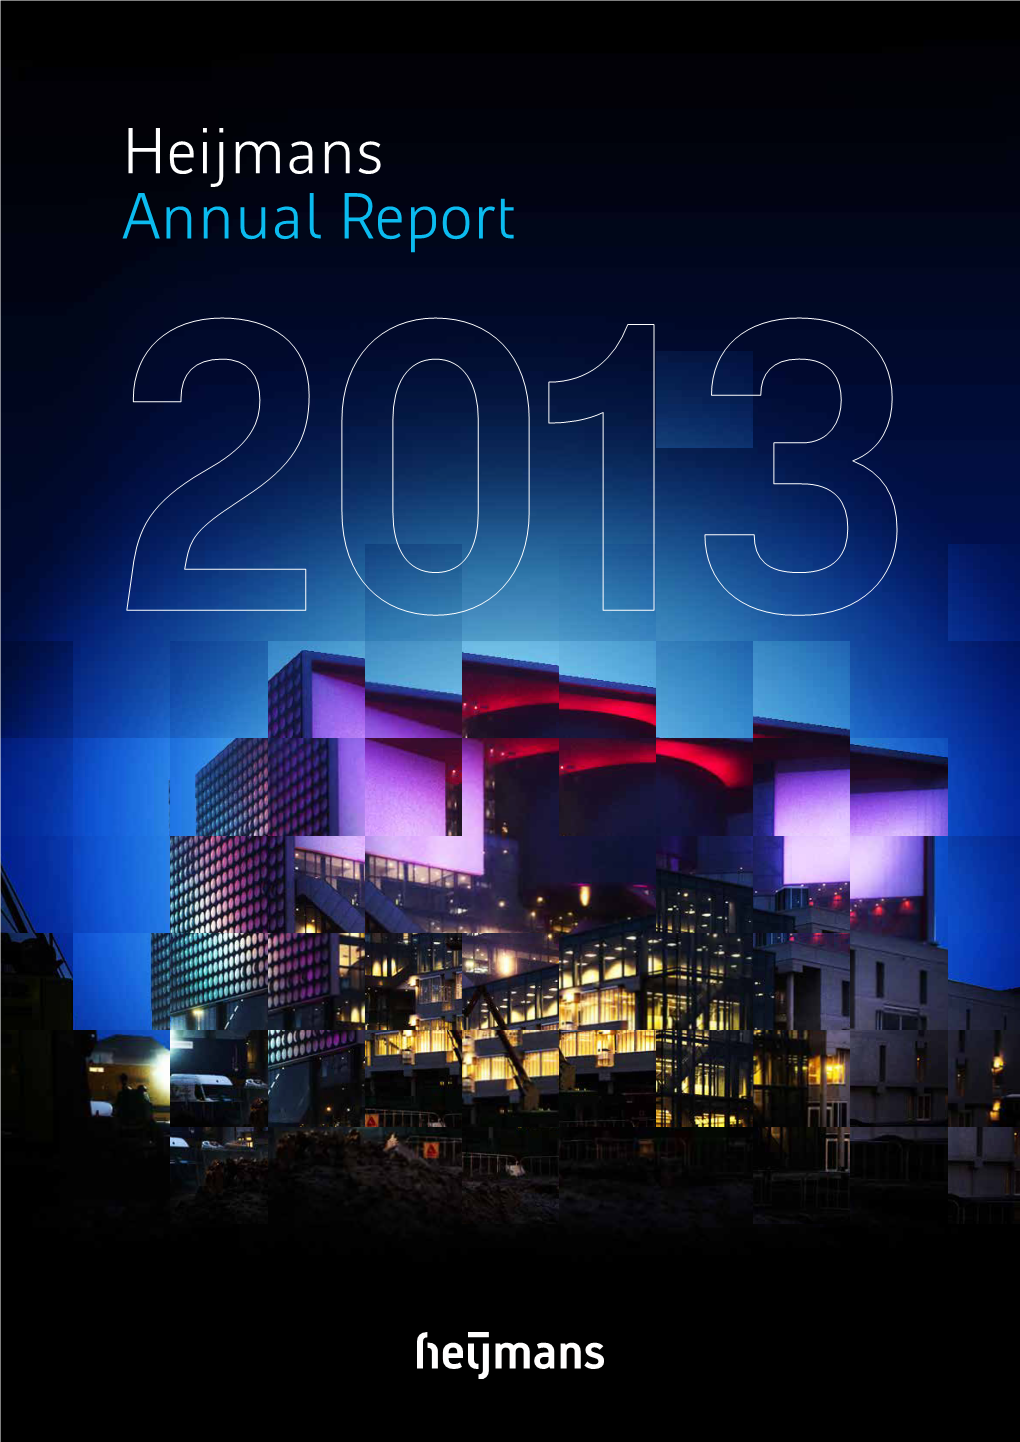 Annual Report 2013.Pdf